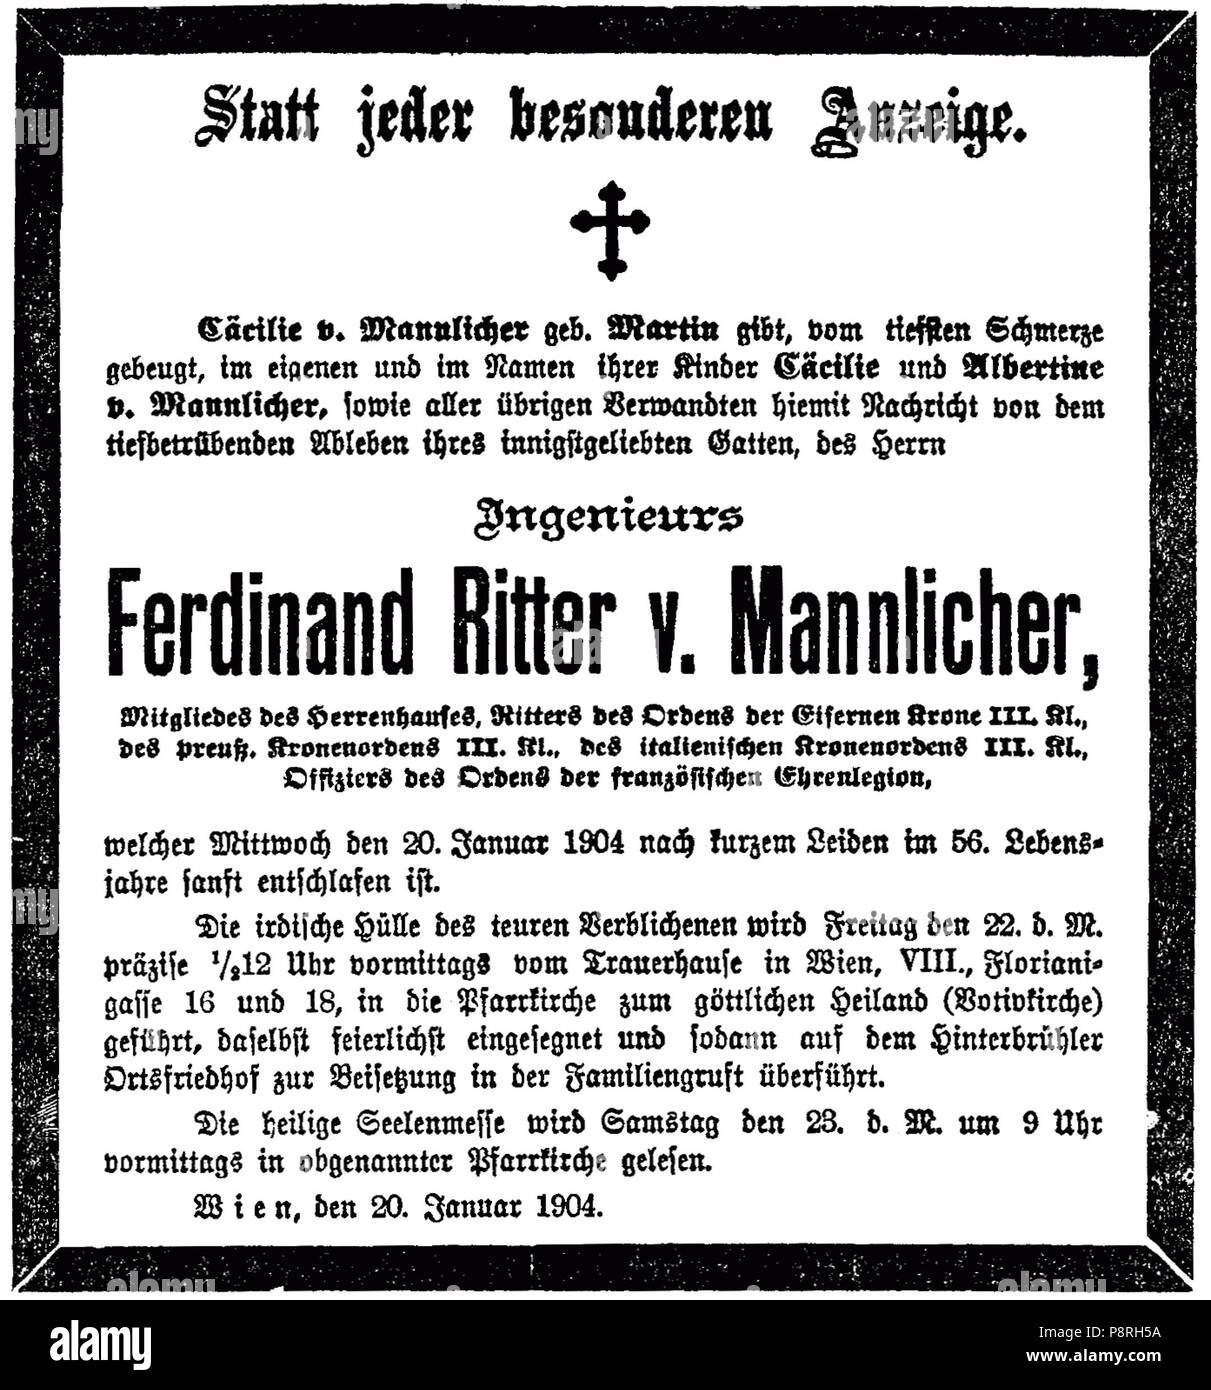 13 1904-01-20 Ferdinand Ritter von Mannlicher (statt jeder besonderen Anzeige) Stock Photo